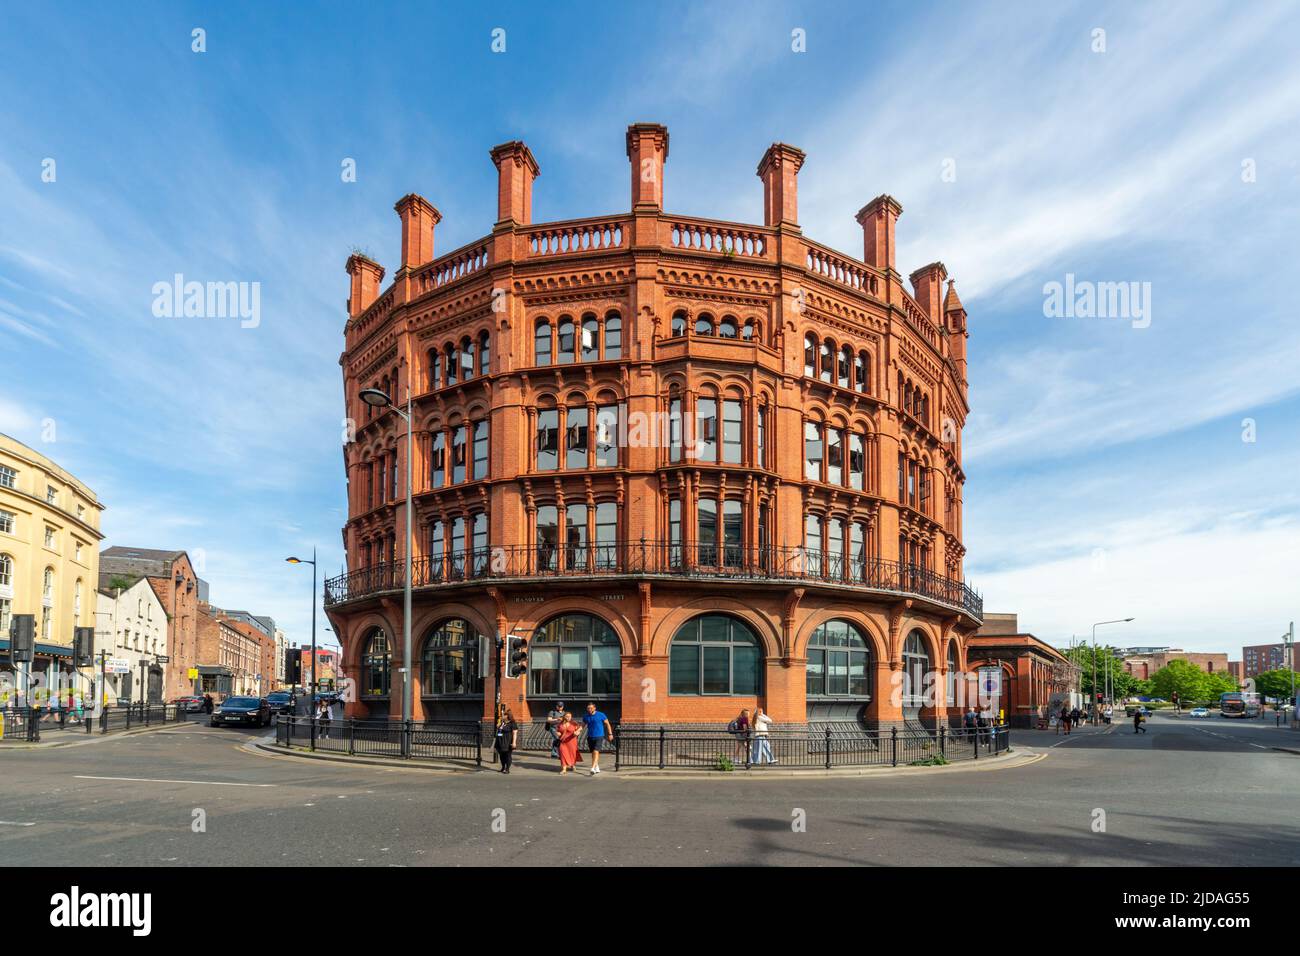 12 Hanover Street, Liverpool. Un bâtiment impressionnant en briques rouges, construit à la fin de 1800s. Angleterre, Royaume-Uni Banque D'Images